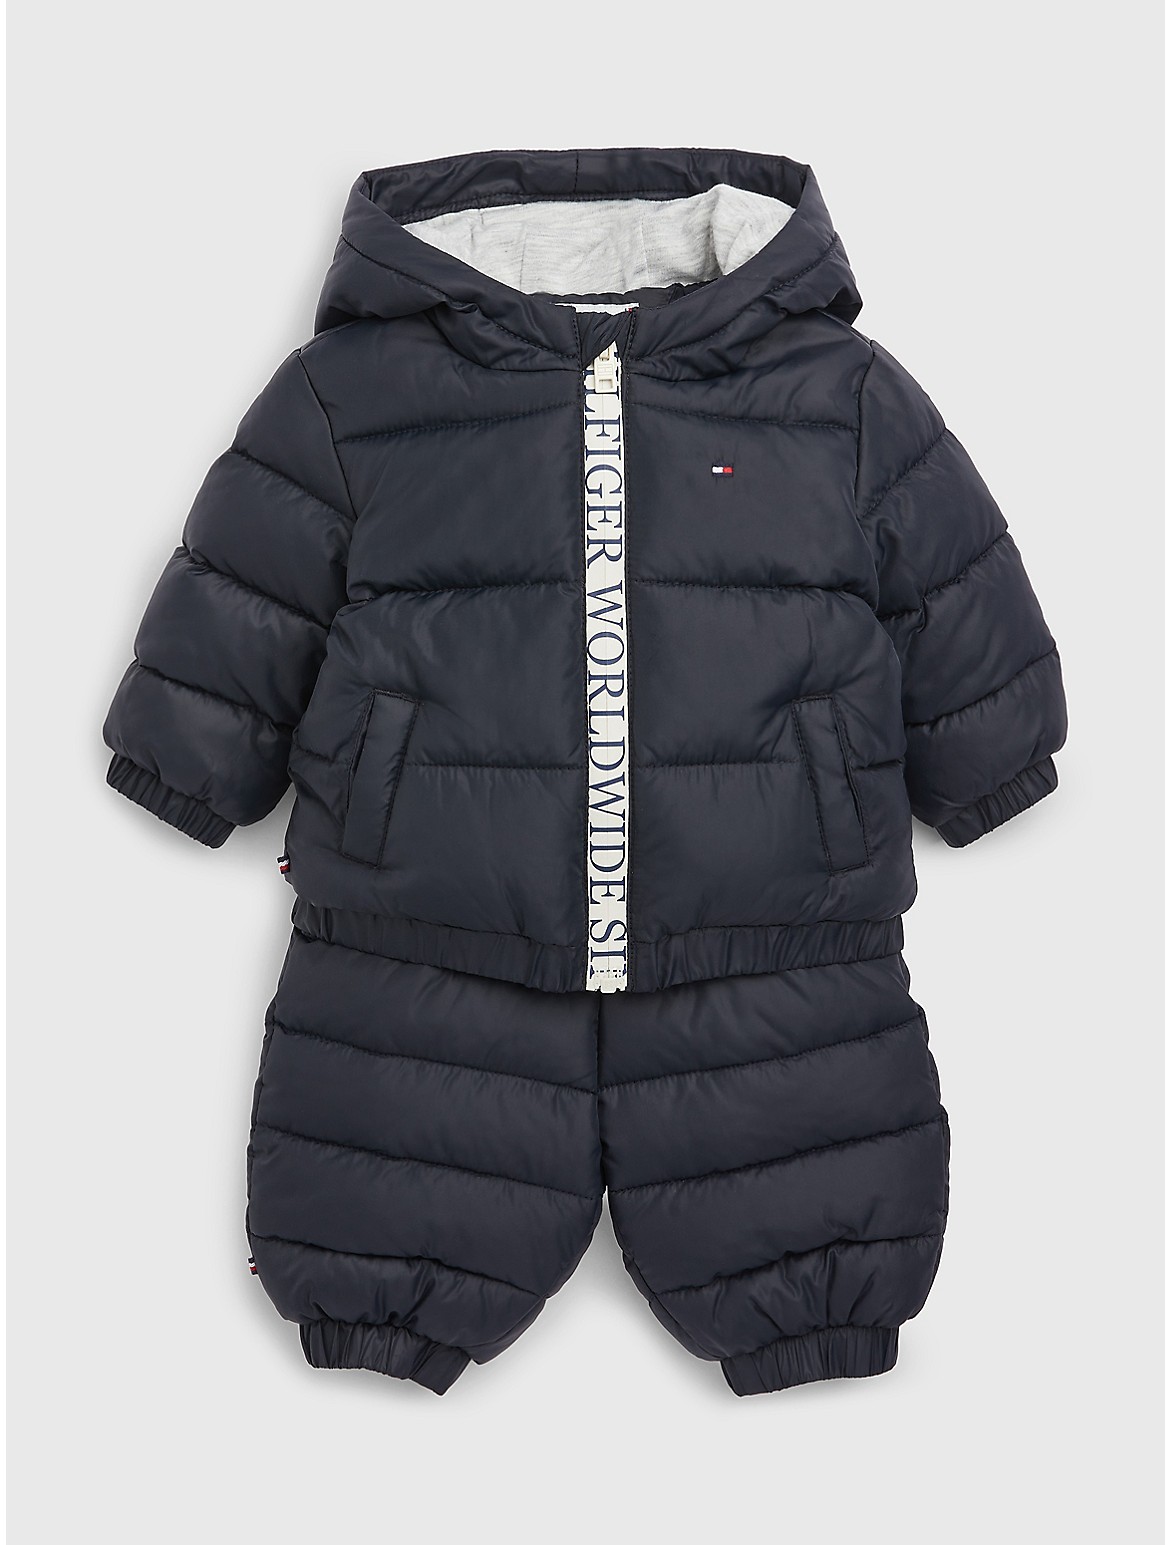 Tommy Hilfiger Babies' Ski Suit 2PC - Blue - NEWBORN